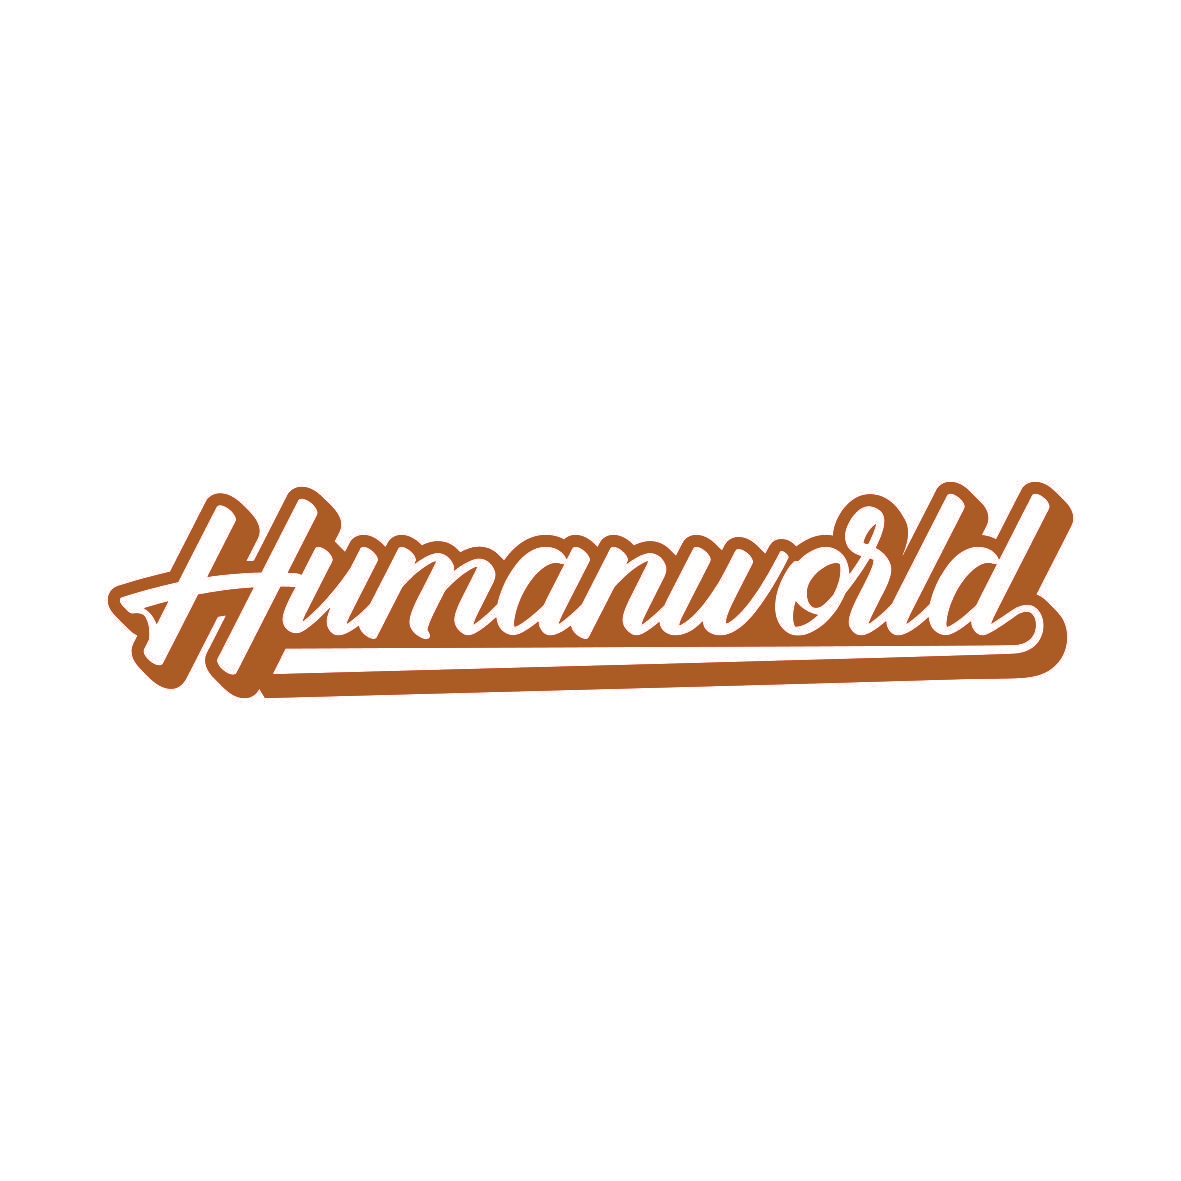 HUMANWORLD